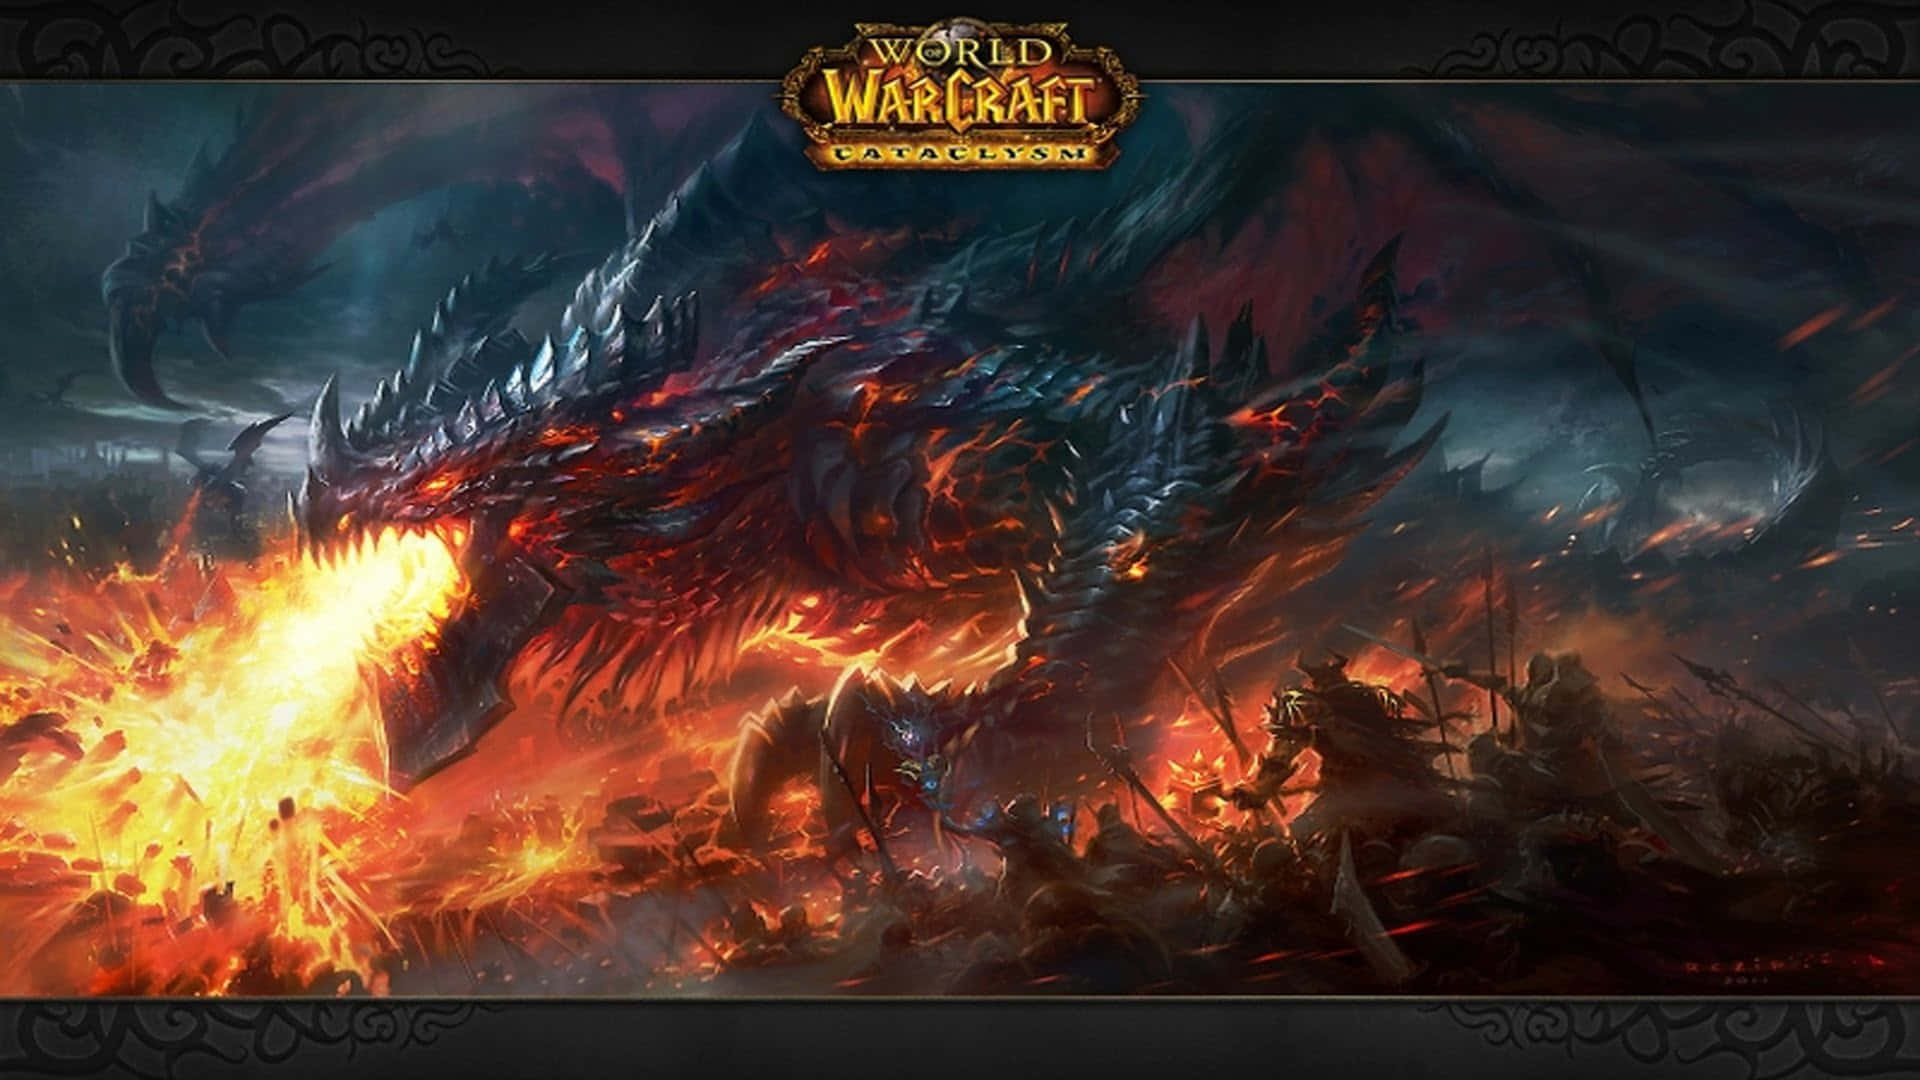 Einepisches Abenteuer Erwartet Dich In Der Welt Von Warcraft. Wallpaper